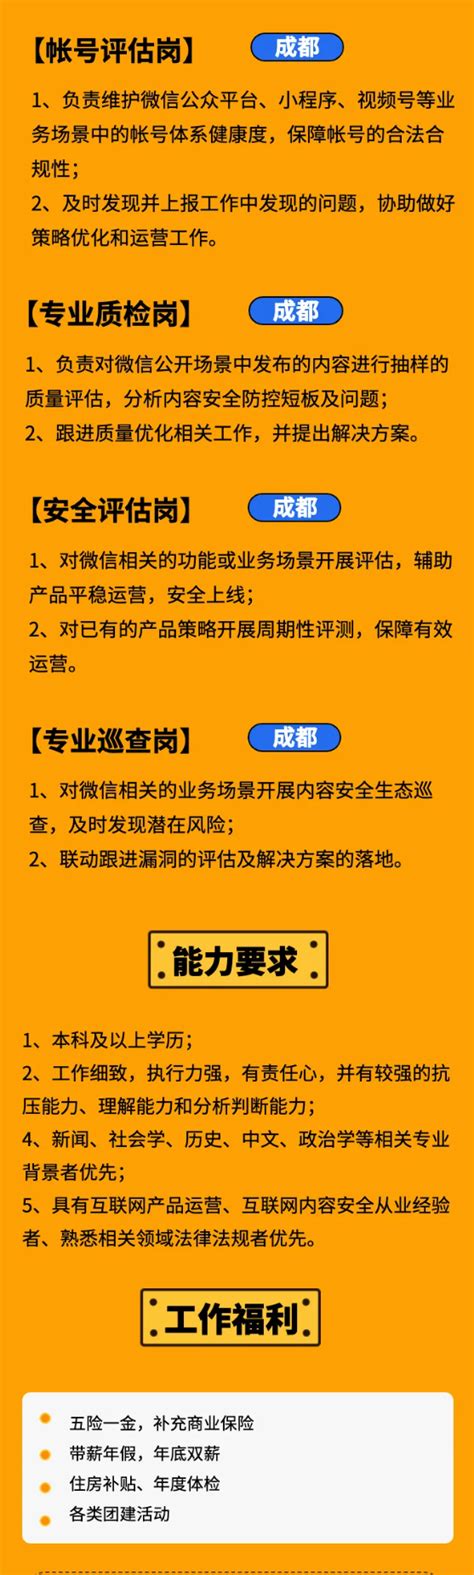 微信宣布招聘“鉴黄师” 要求本科学历起步 - Tencent WeChat 腾讯微信 - cnBeta.COM